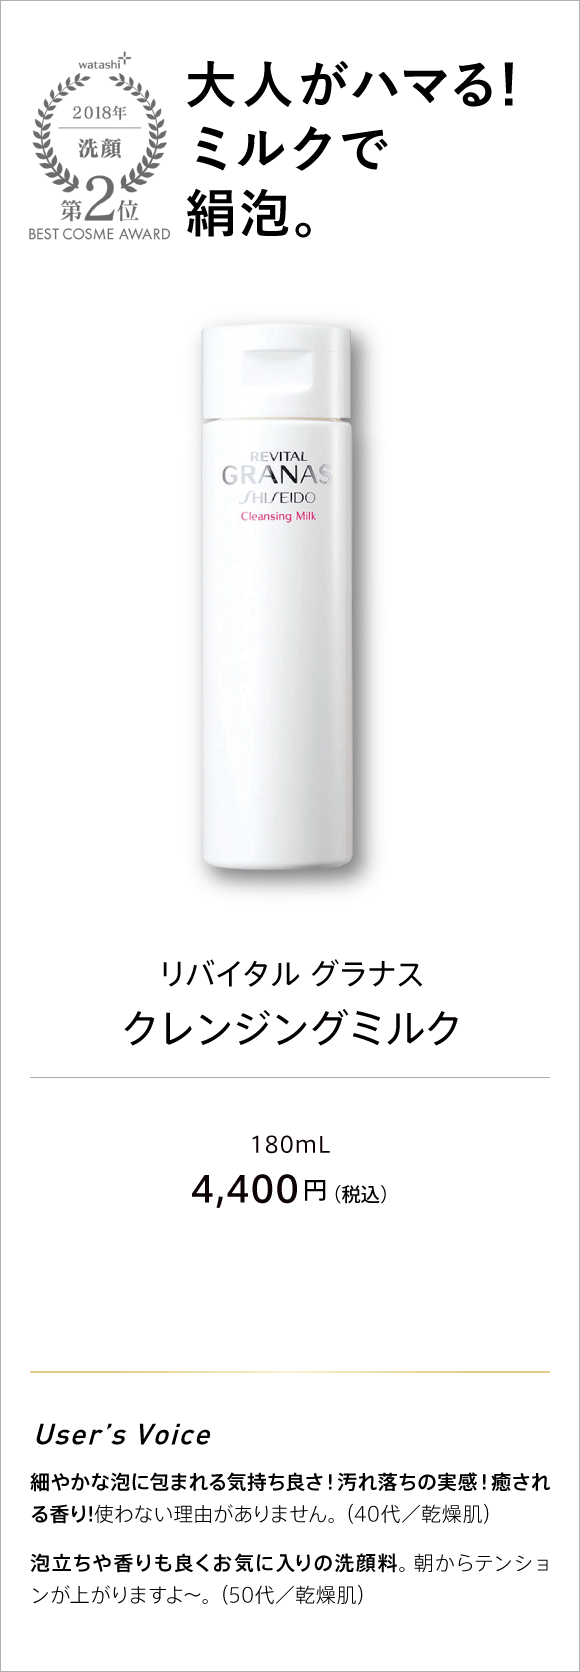 watashi+ 2018 洗顔 第2位 BEST COSME AWARD 大人がハマる!ミルクで絹泡。 リバイタル グラナス クレンジングミルク 180ml 4,400円(税込)